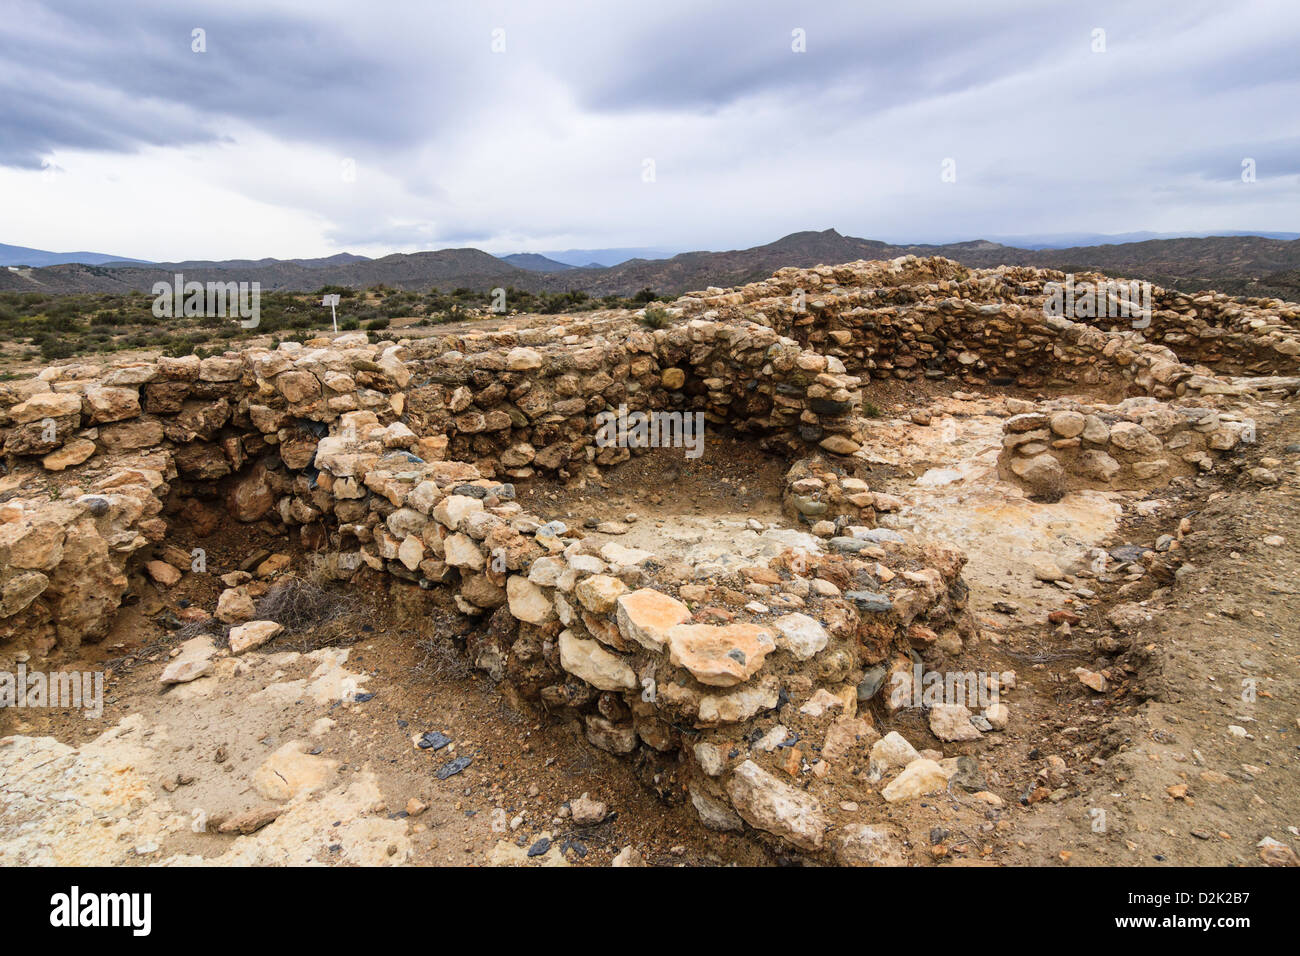 Los Millares. Sitio arqueológico de la Edad del Cobre. Almería, España Foto de stock